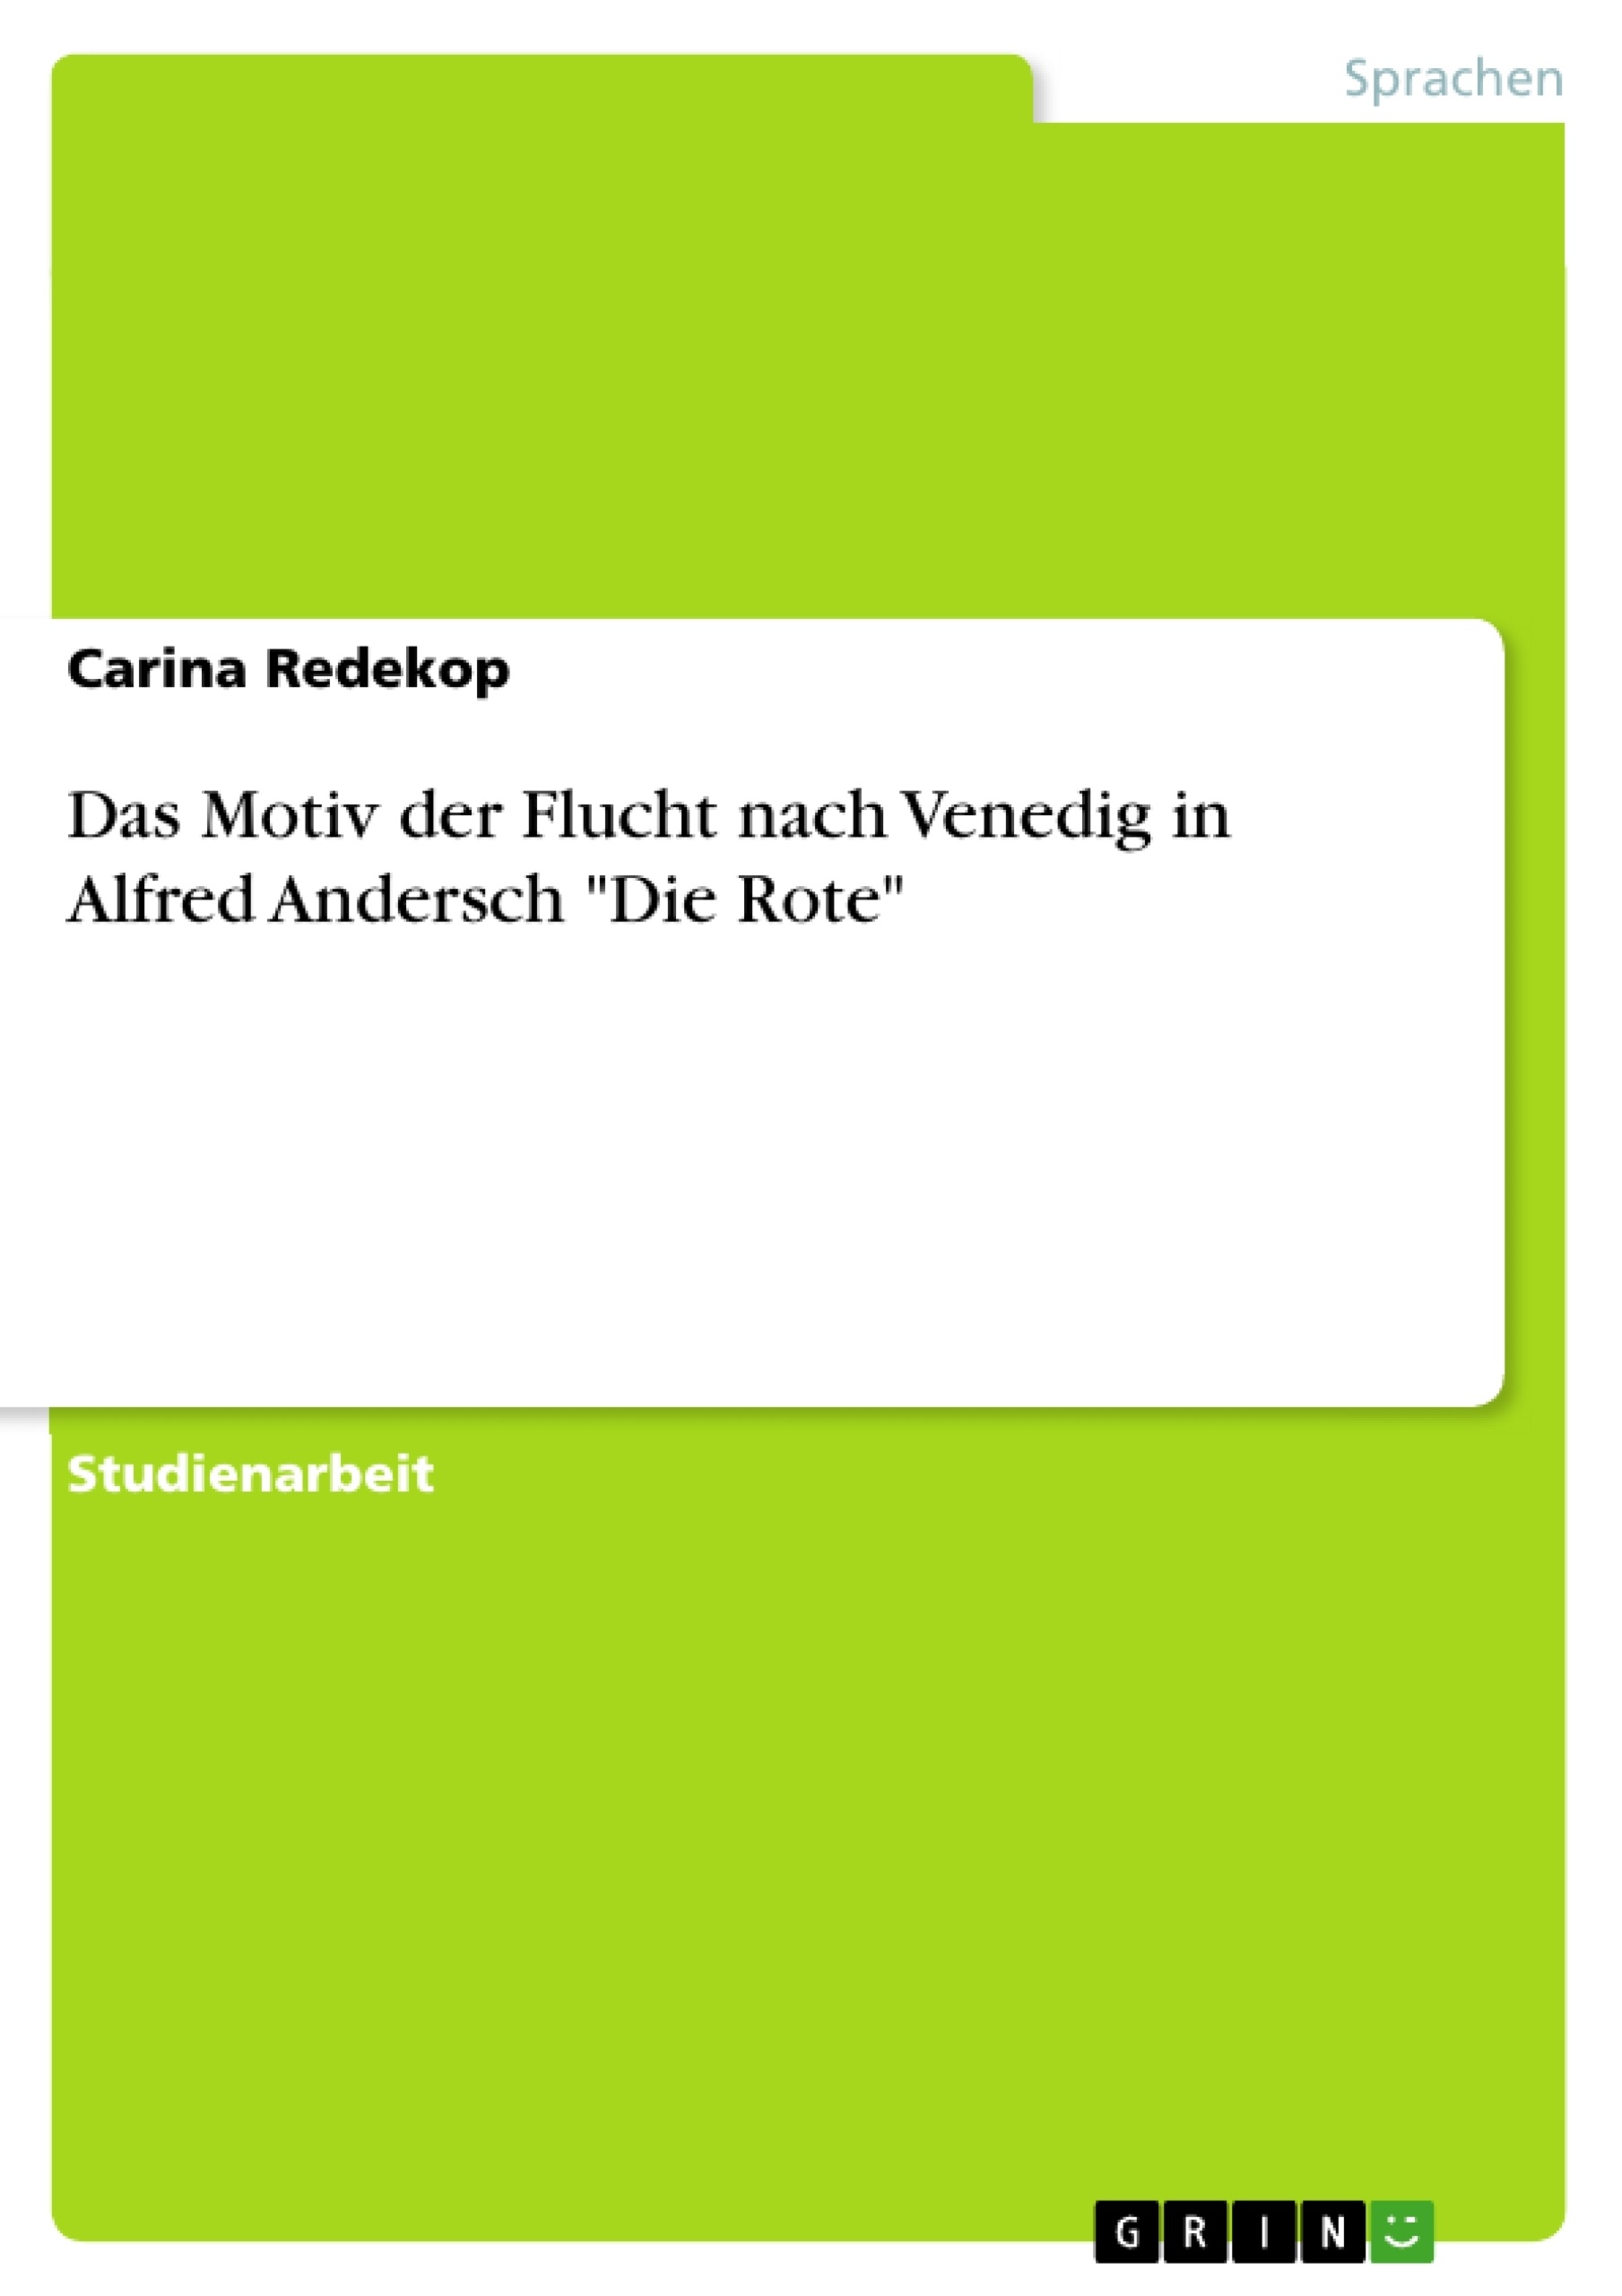 Titre: Das Motiv der Flucht nach Venedig in Alfred Andersch "Die Rote"